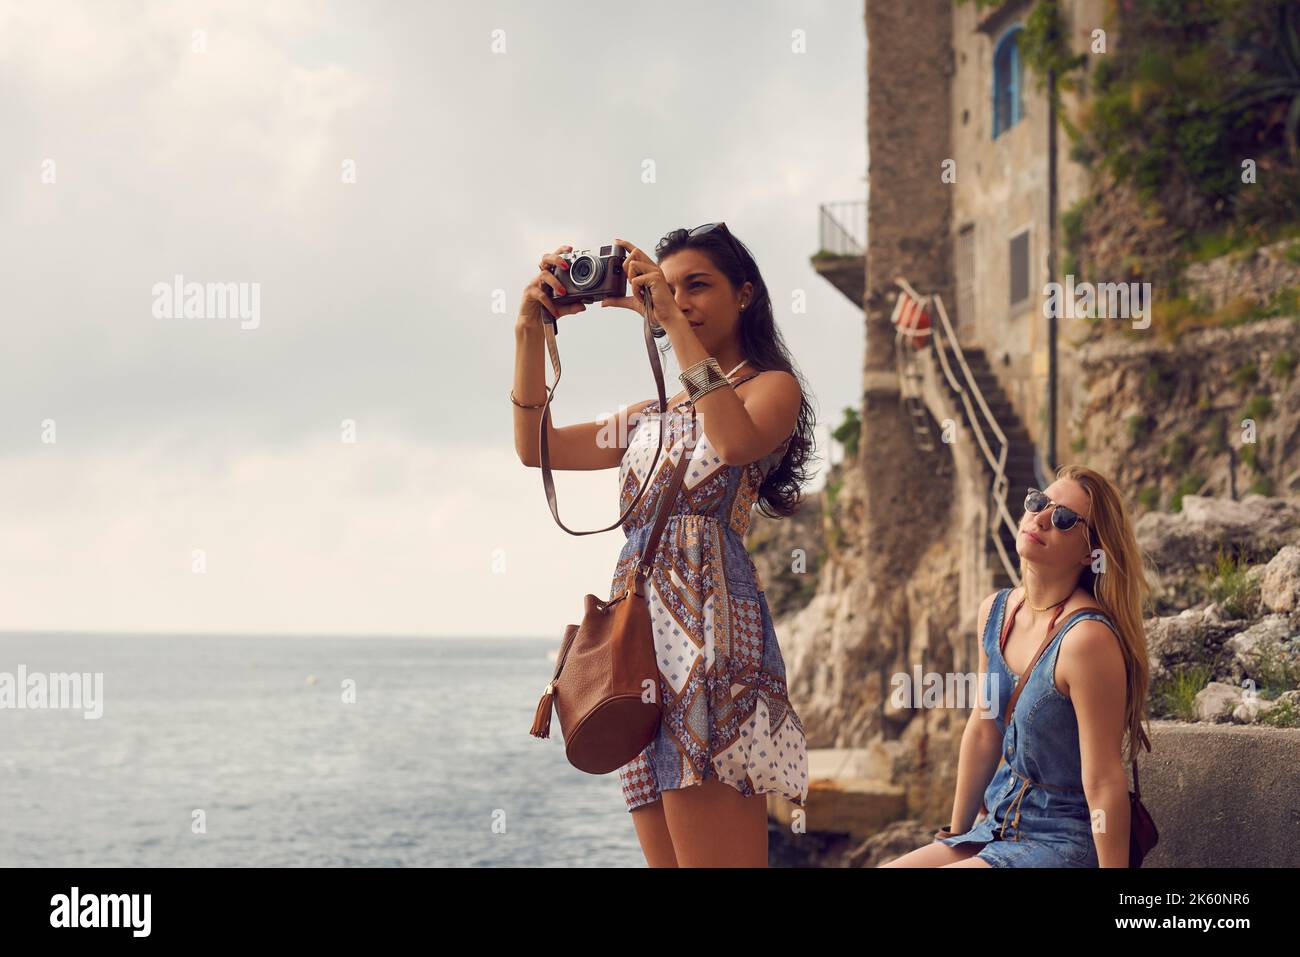 Captar la belleza italiana. Una atractiva mujer joven que se vincula con su amiga en Italia y utiliza una cámara. Foto de stock